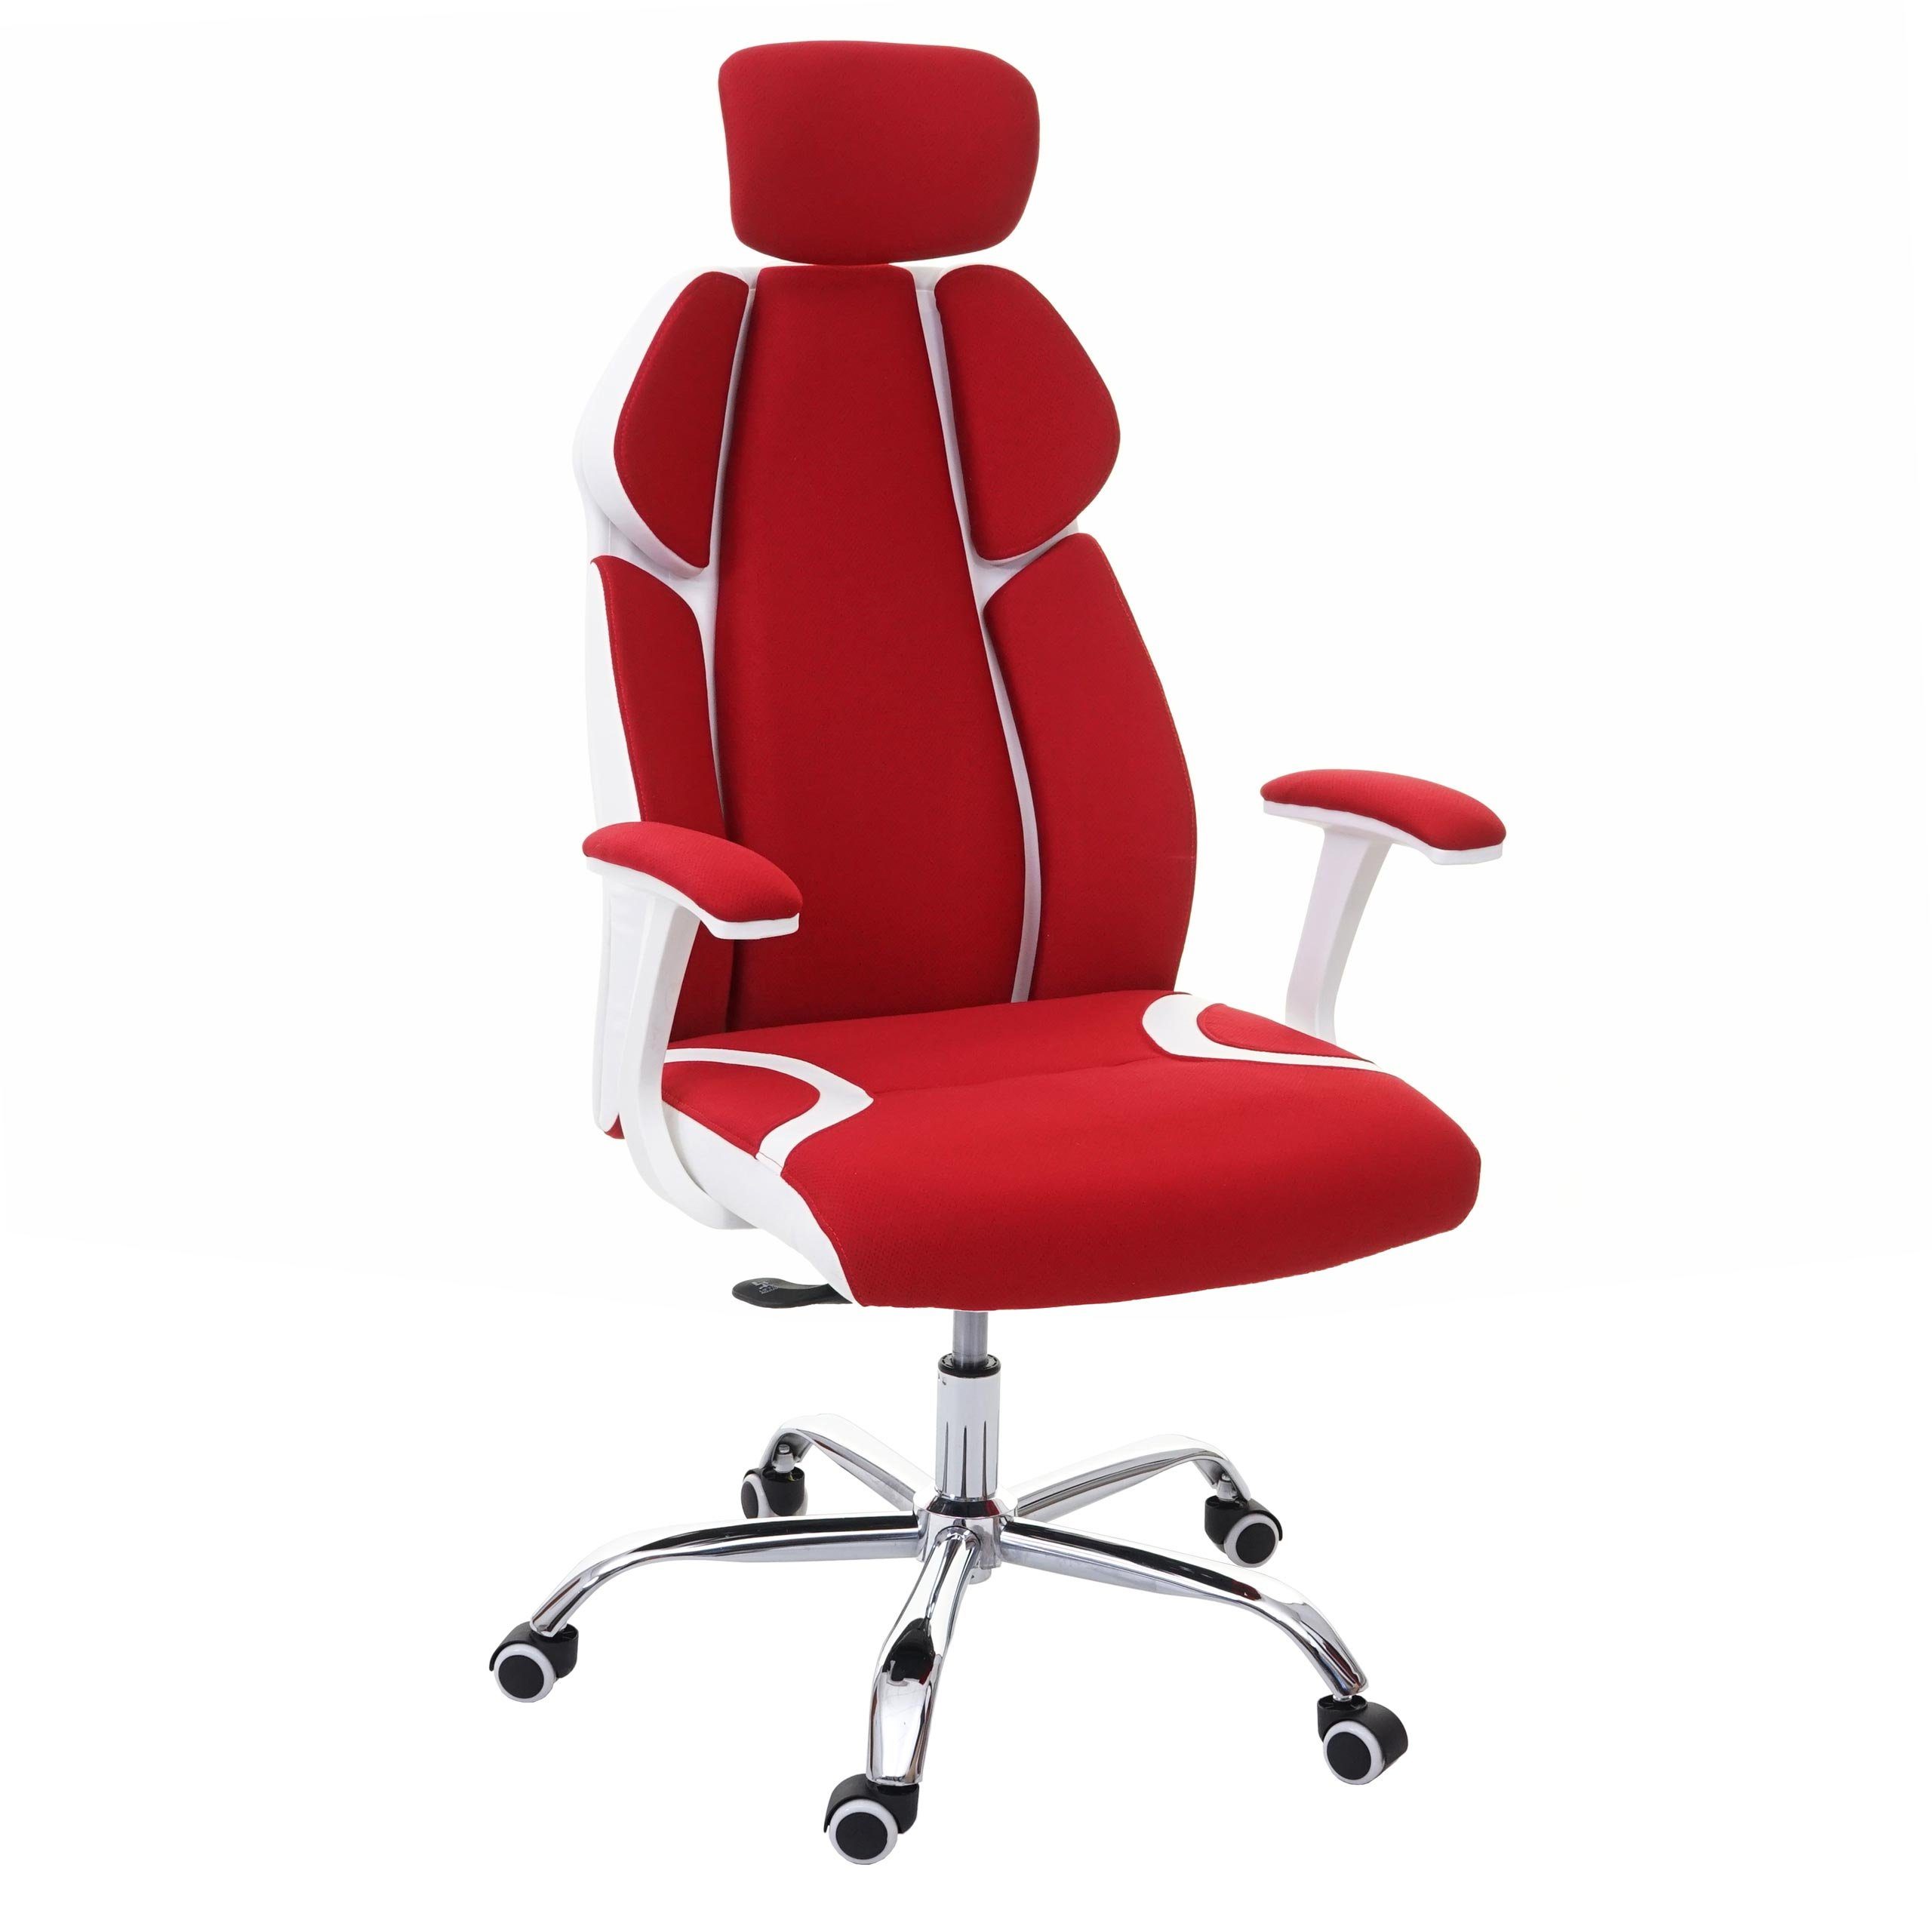 MCW Schreibtischstuhl MCW-F12, Sliding-Funktion, Wippfunktion arretierbar, Höhenverstellbare Kopfstütze, Sliding Sitz rot/weiß